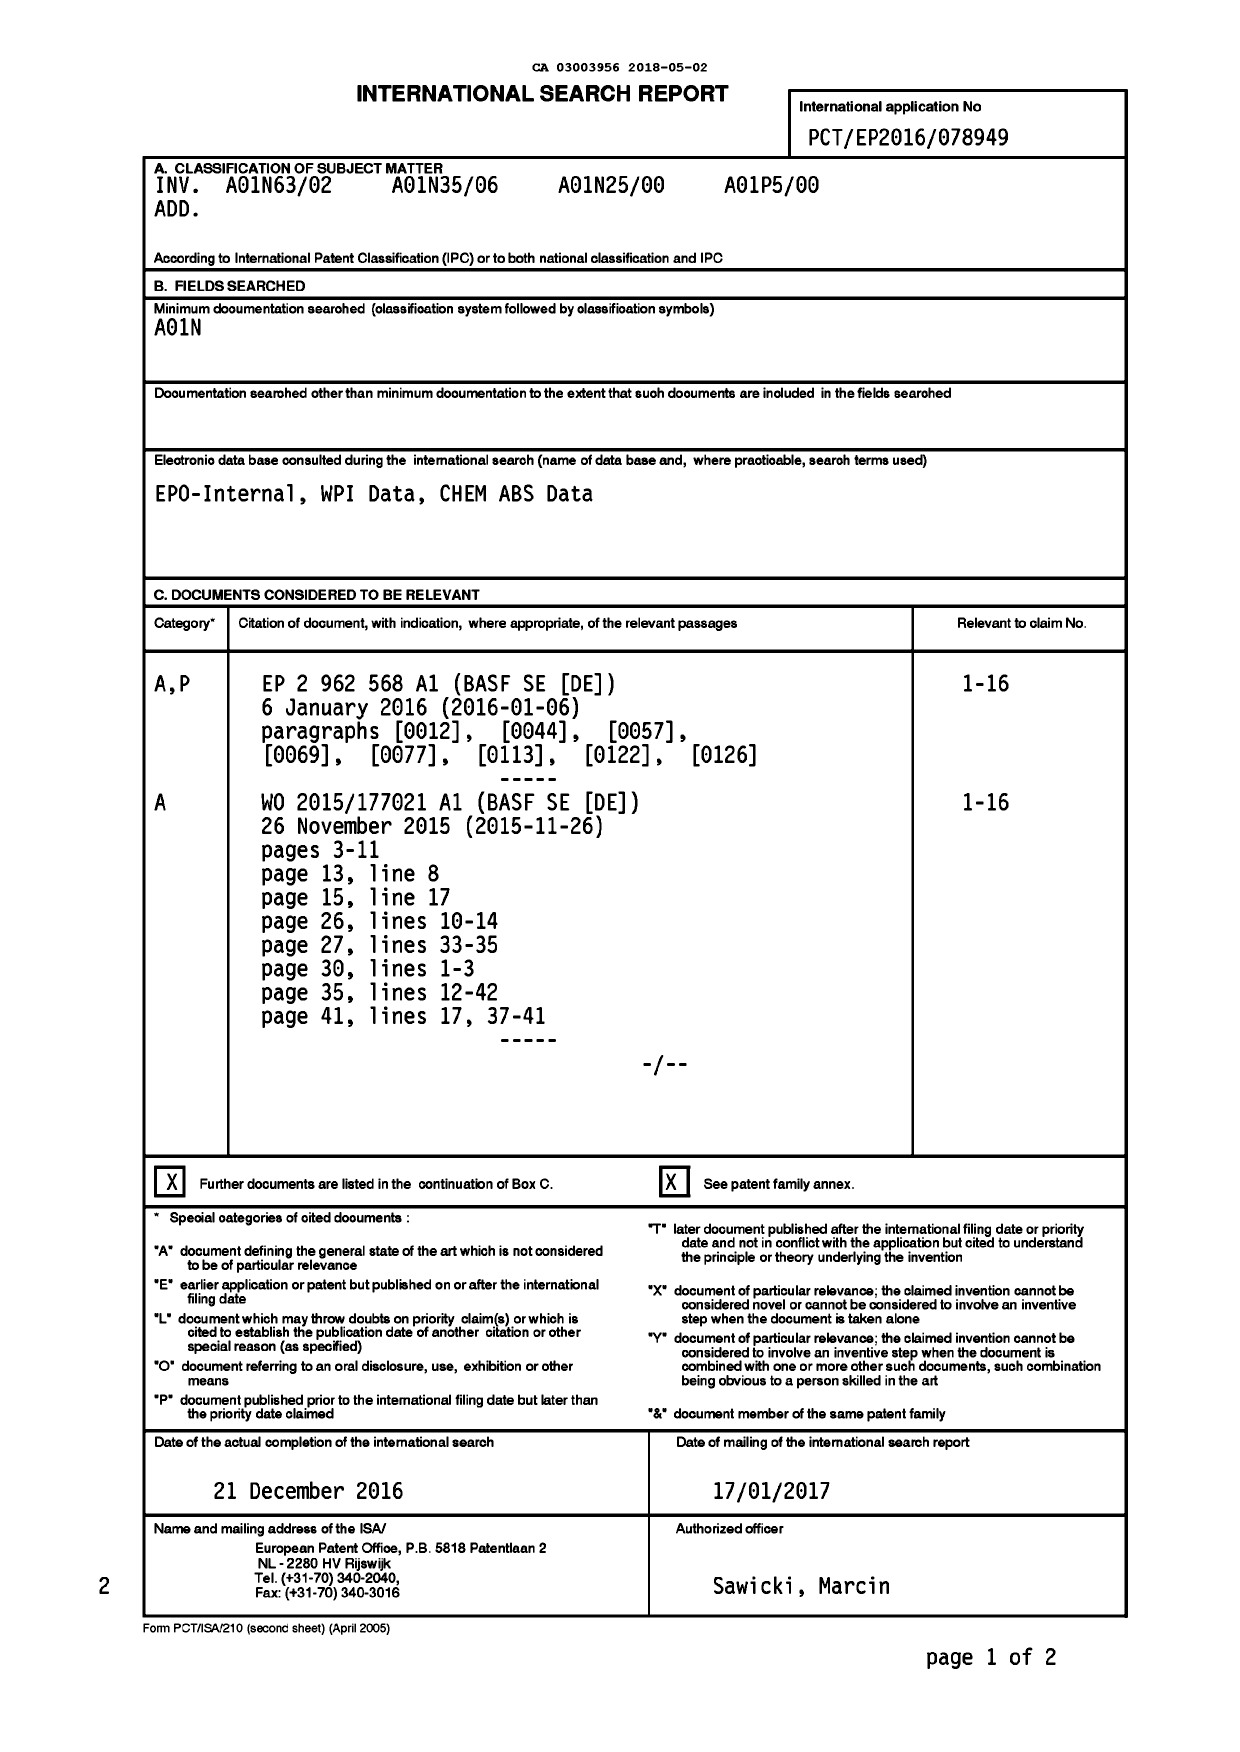 Document de brevet canadien 3003956. Rapport de recherche internationale 20180502. Image 1 de 3